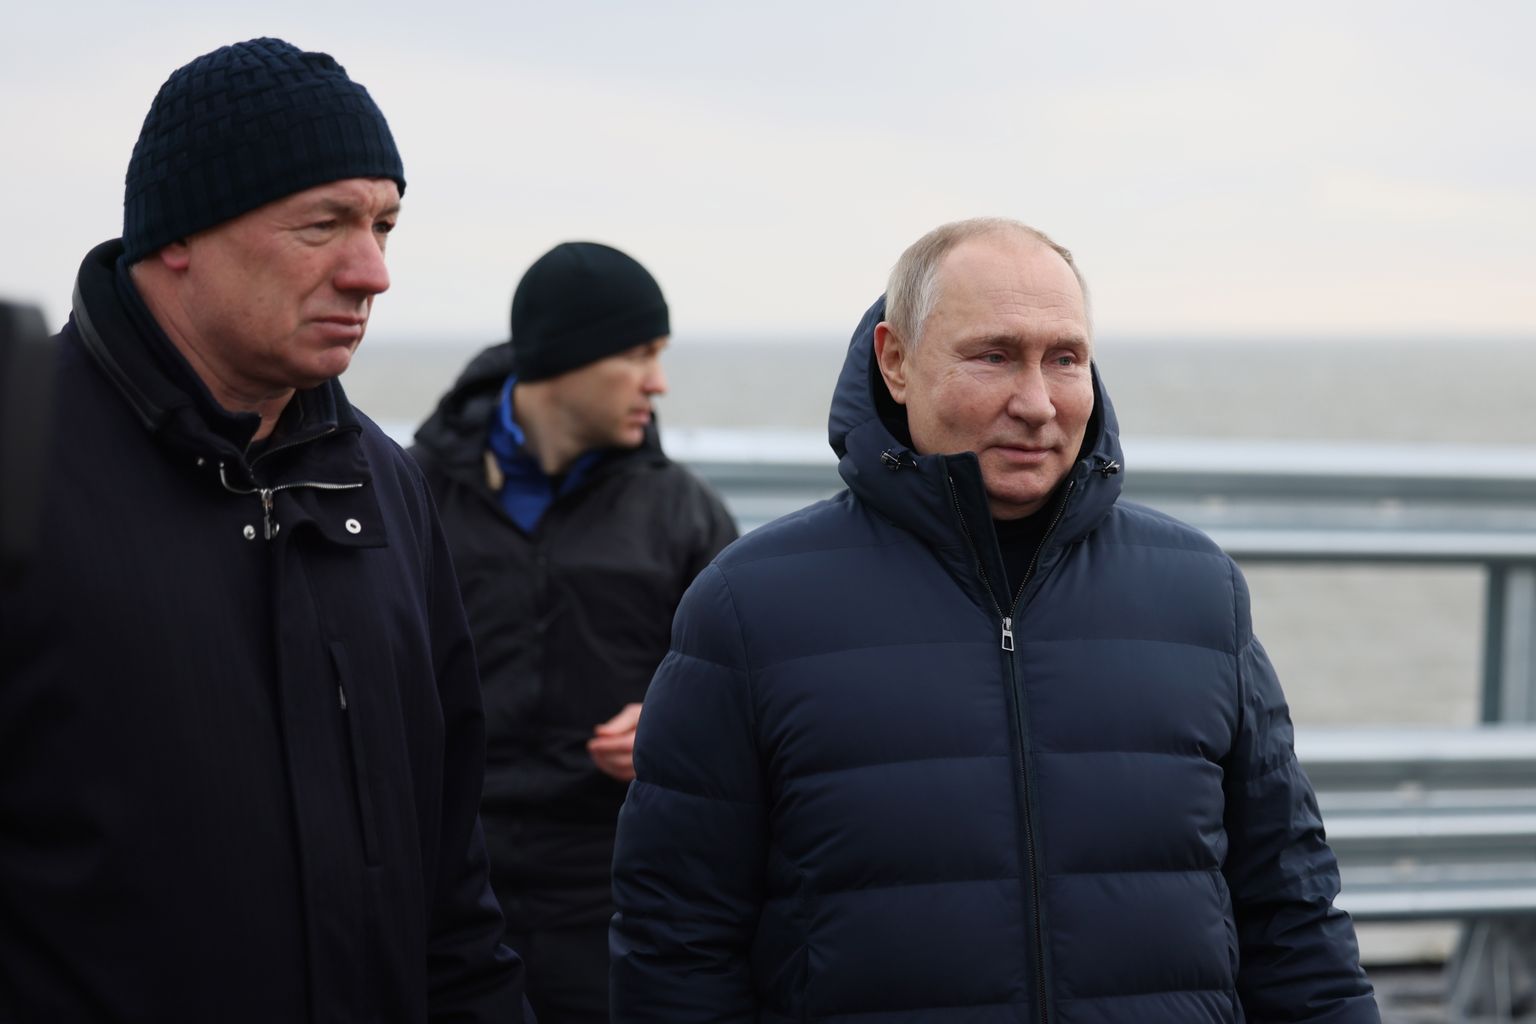 Venemaa president Vladimir Putin (paremal) ja asepeaminister Marat Khusnullin (vasakul) külastasid 5 detsembril 2022 Kertši väina silda